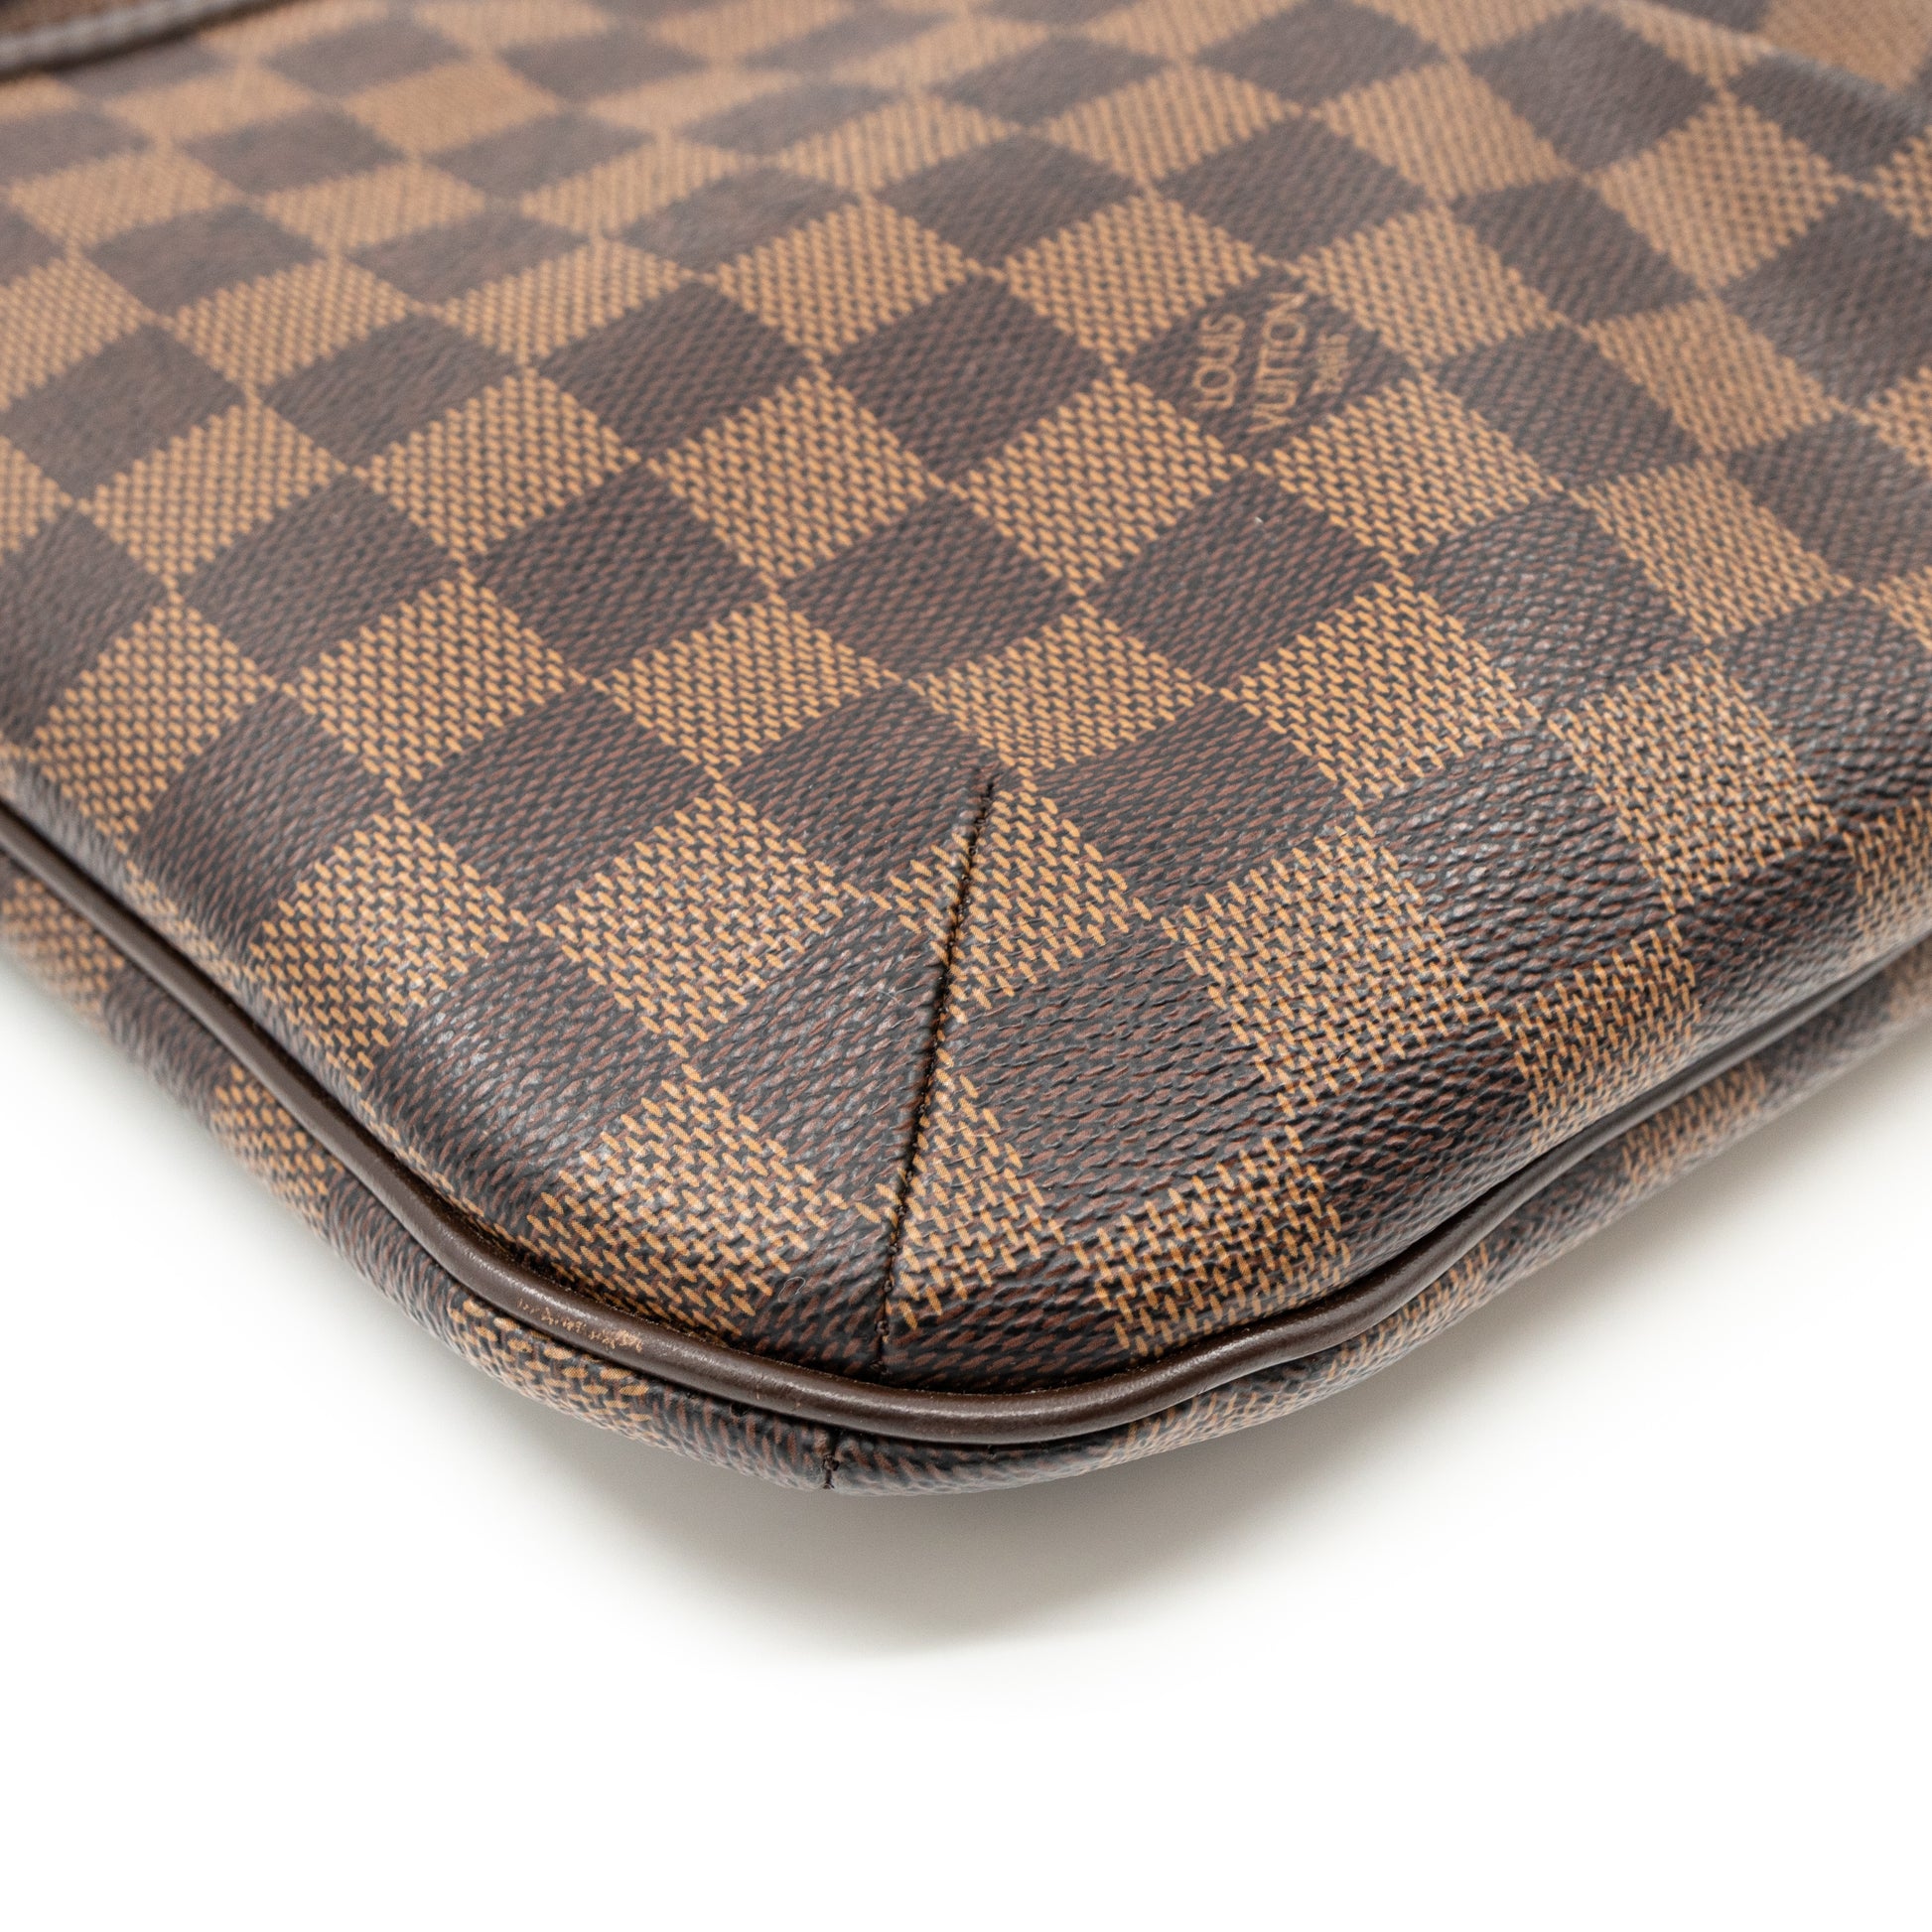 Louis Vuitton Damier Ebene Bloomsbury PM Crossbody Bag 9lk412s at